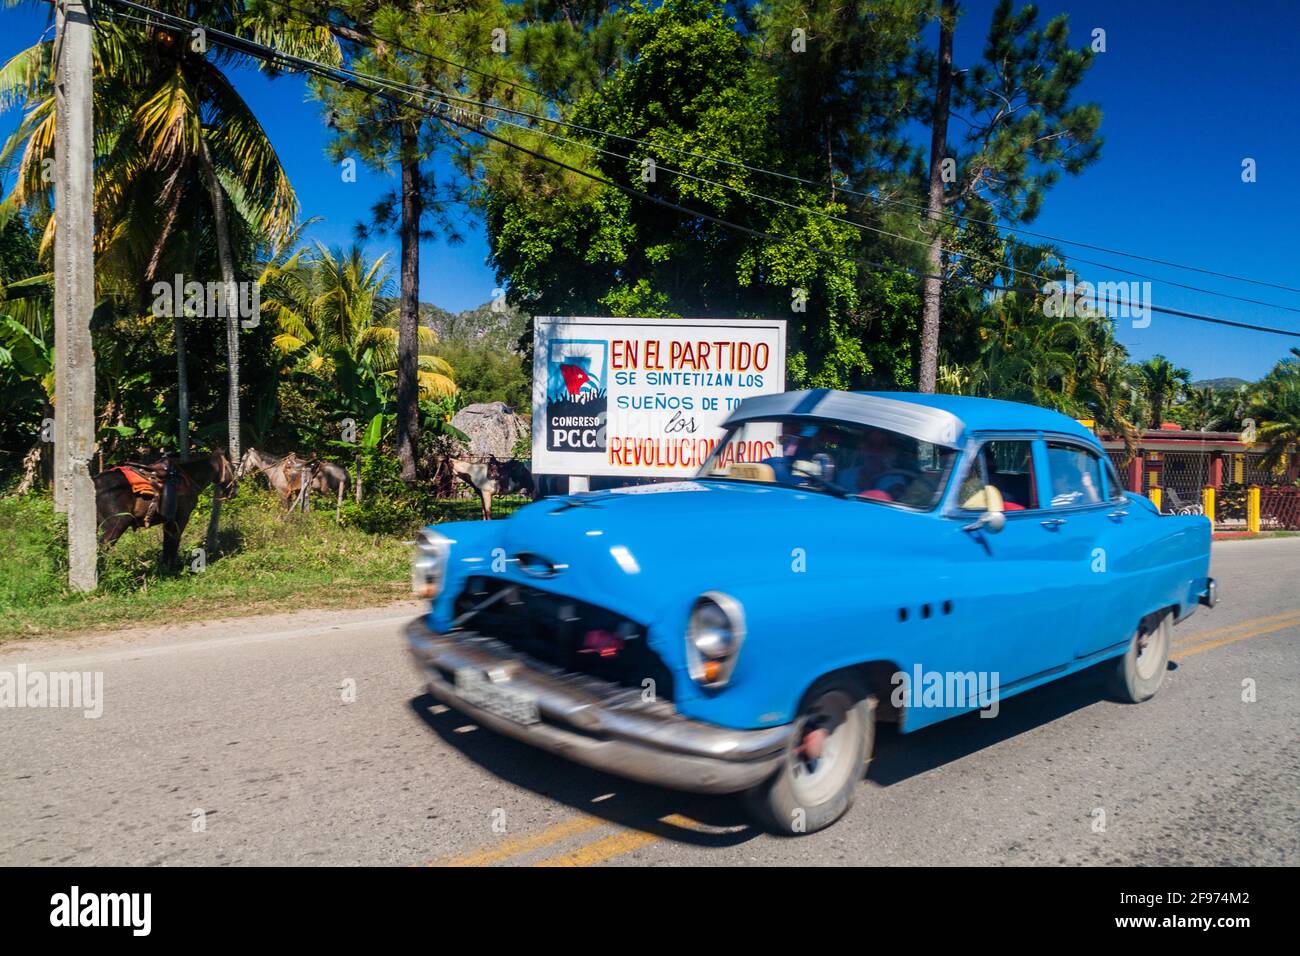 VINALES, CUBA - 18 FÉVRIER 2016 : voiture d'époque et affiche de propagande près du village de Vinales, Cuba. Il dit: Les rêves de tous les révolutionnaires sont syn Banque D'Images